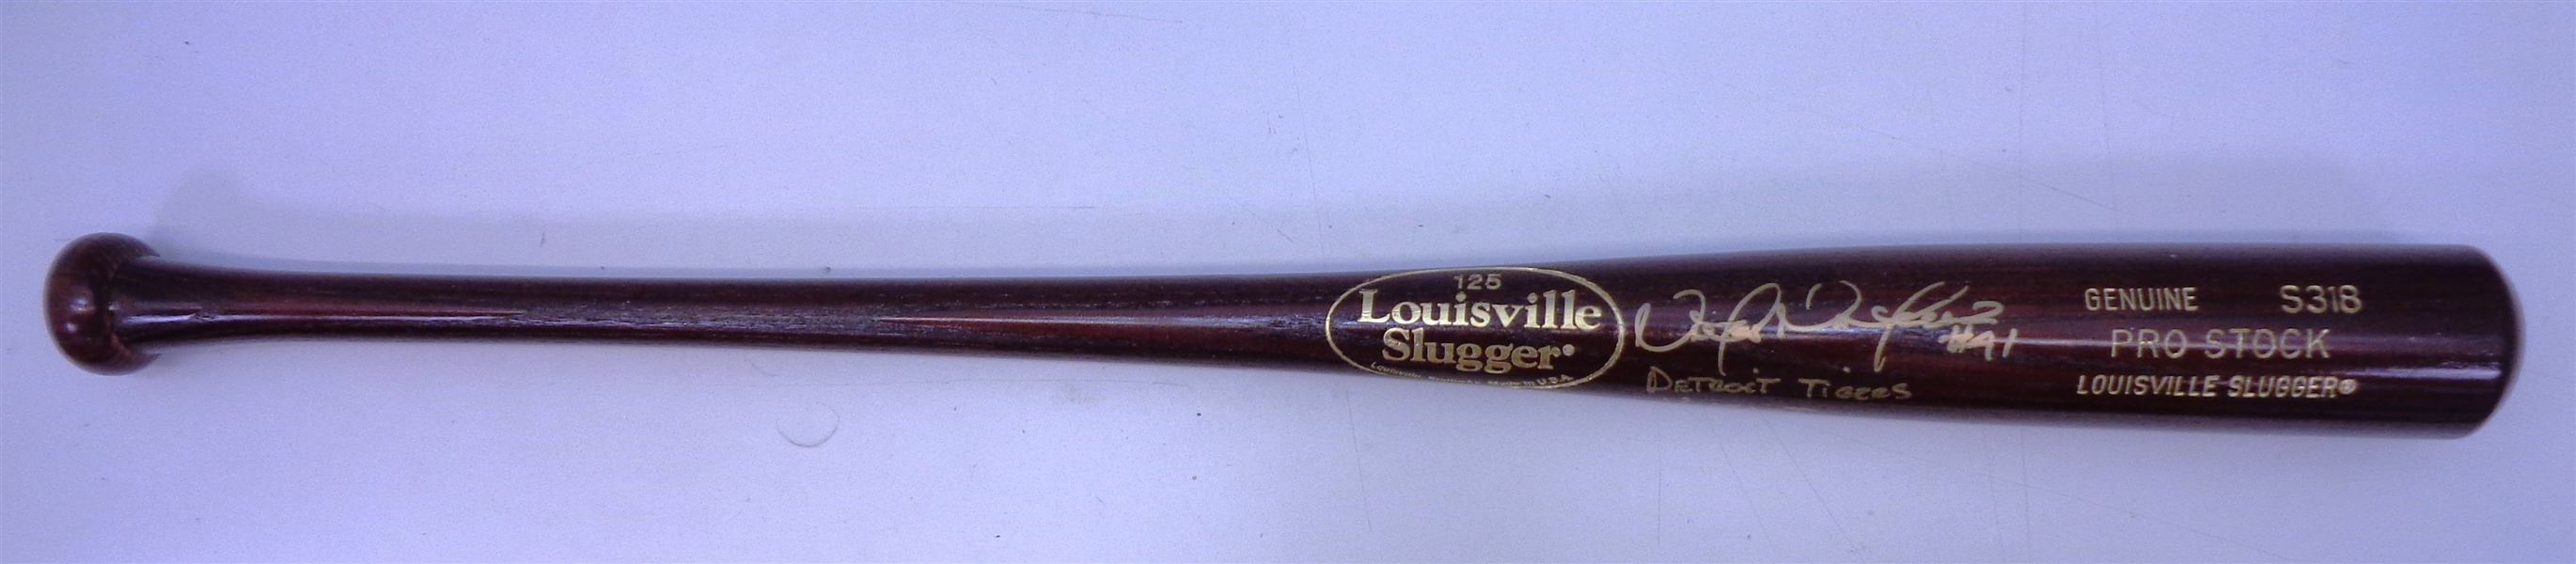 Victor Martinez Autographed Louisville Slugger Bat